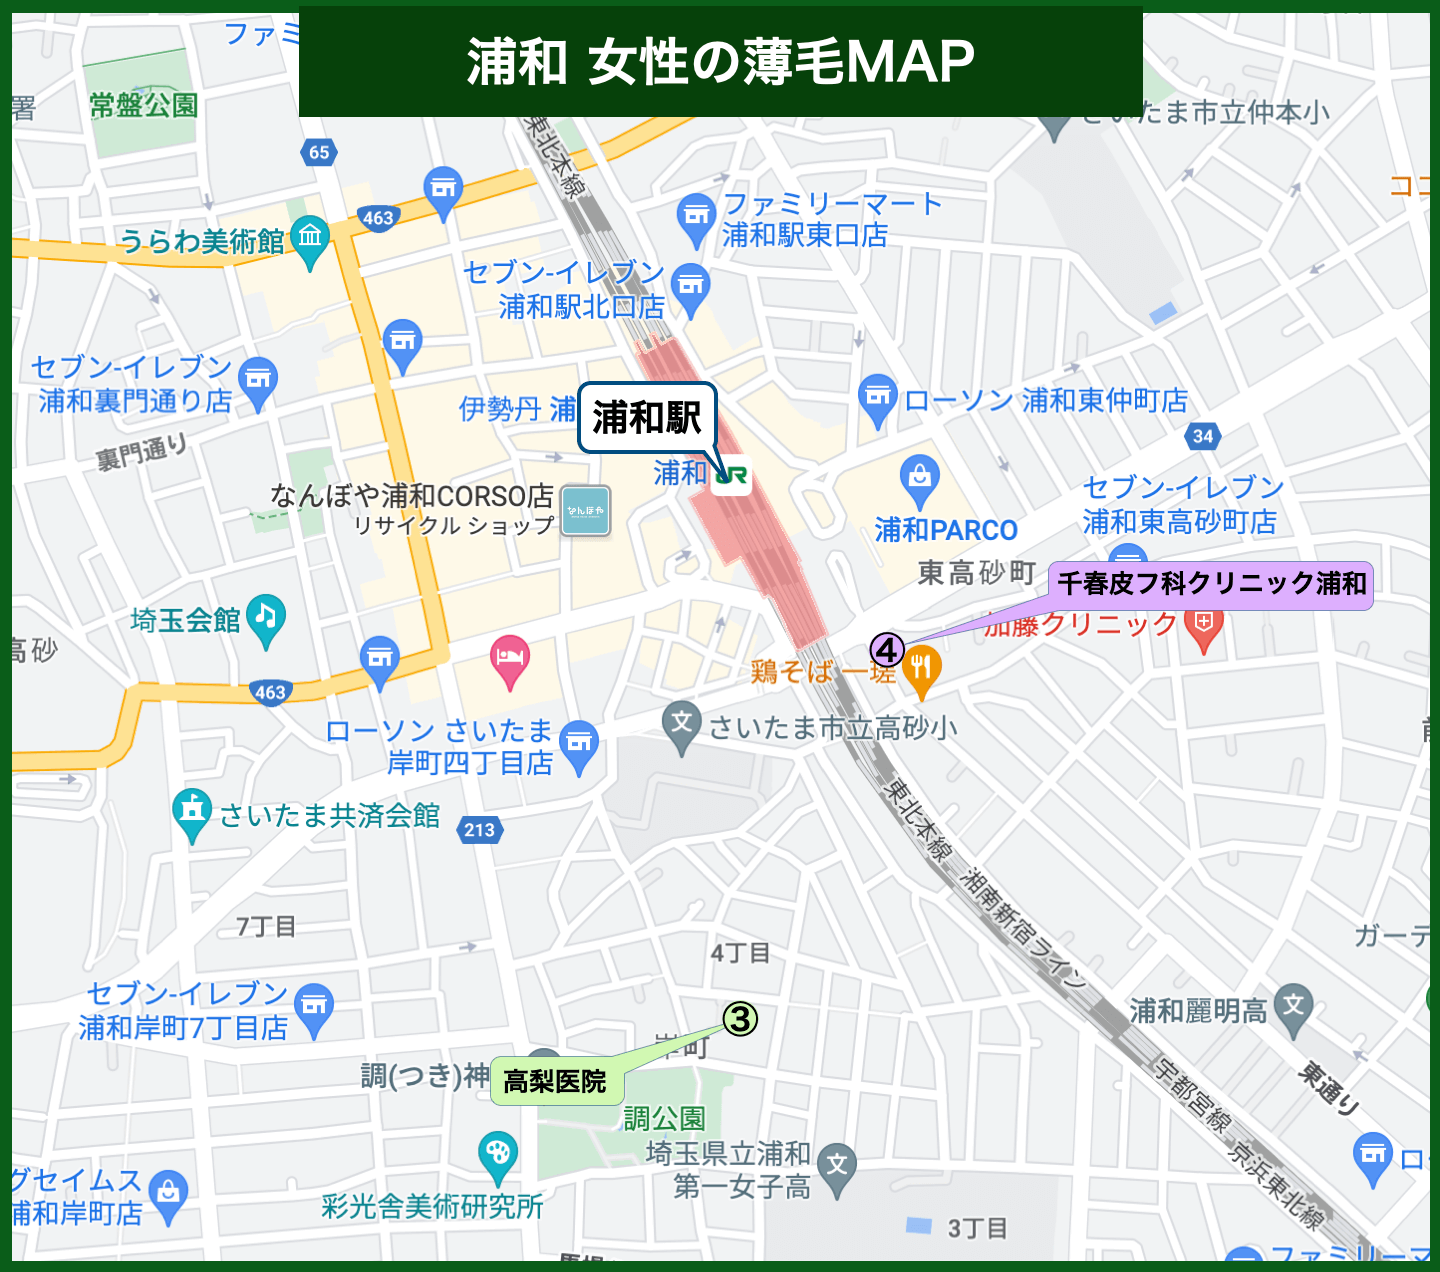 浦和駅女性の薄毛MAP